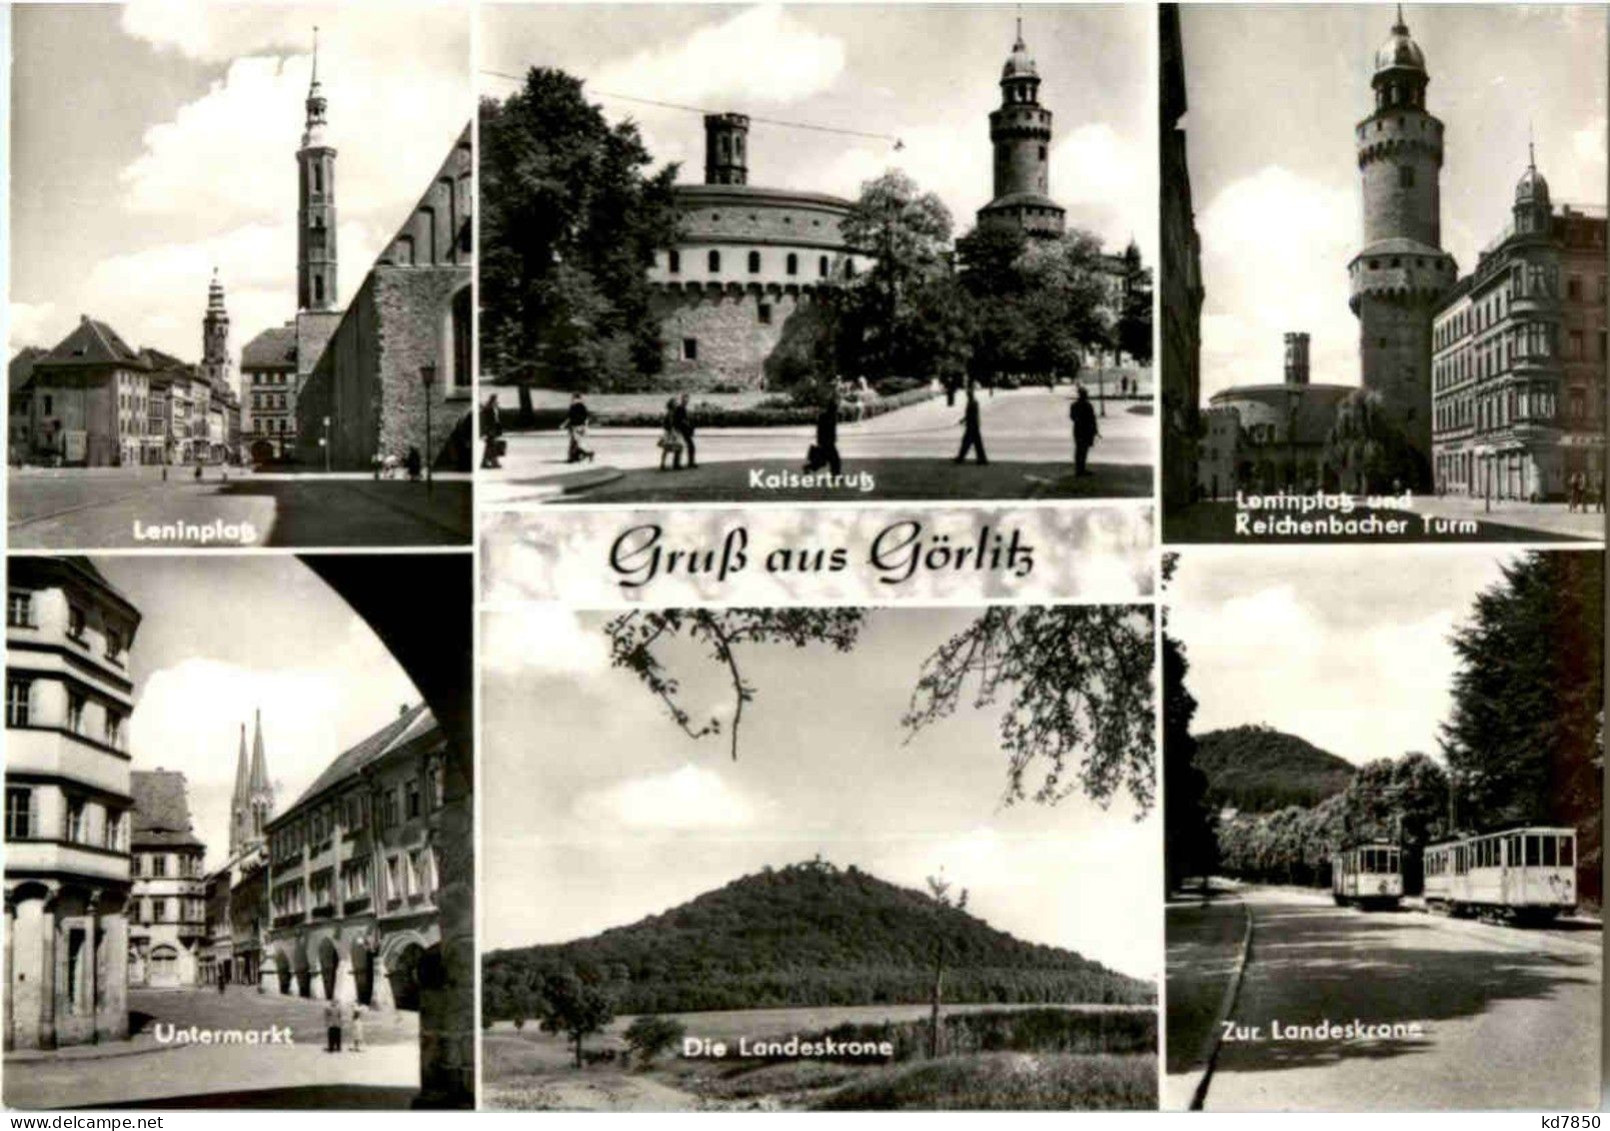 Görlitz - Görlitz